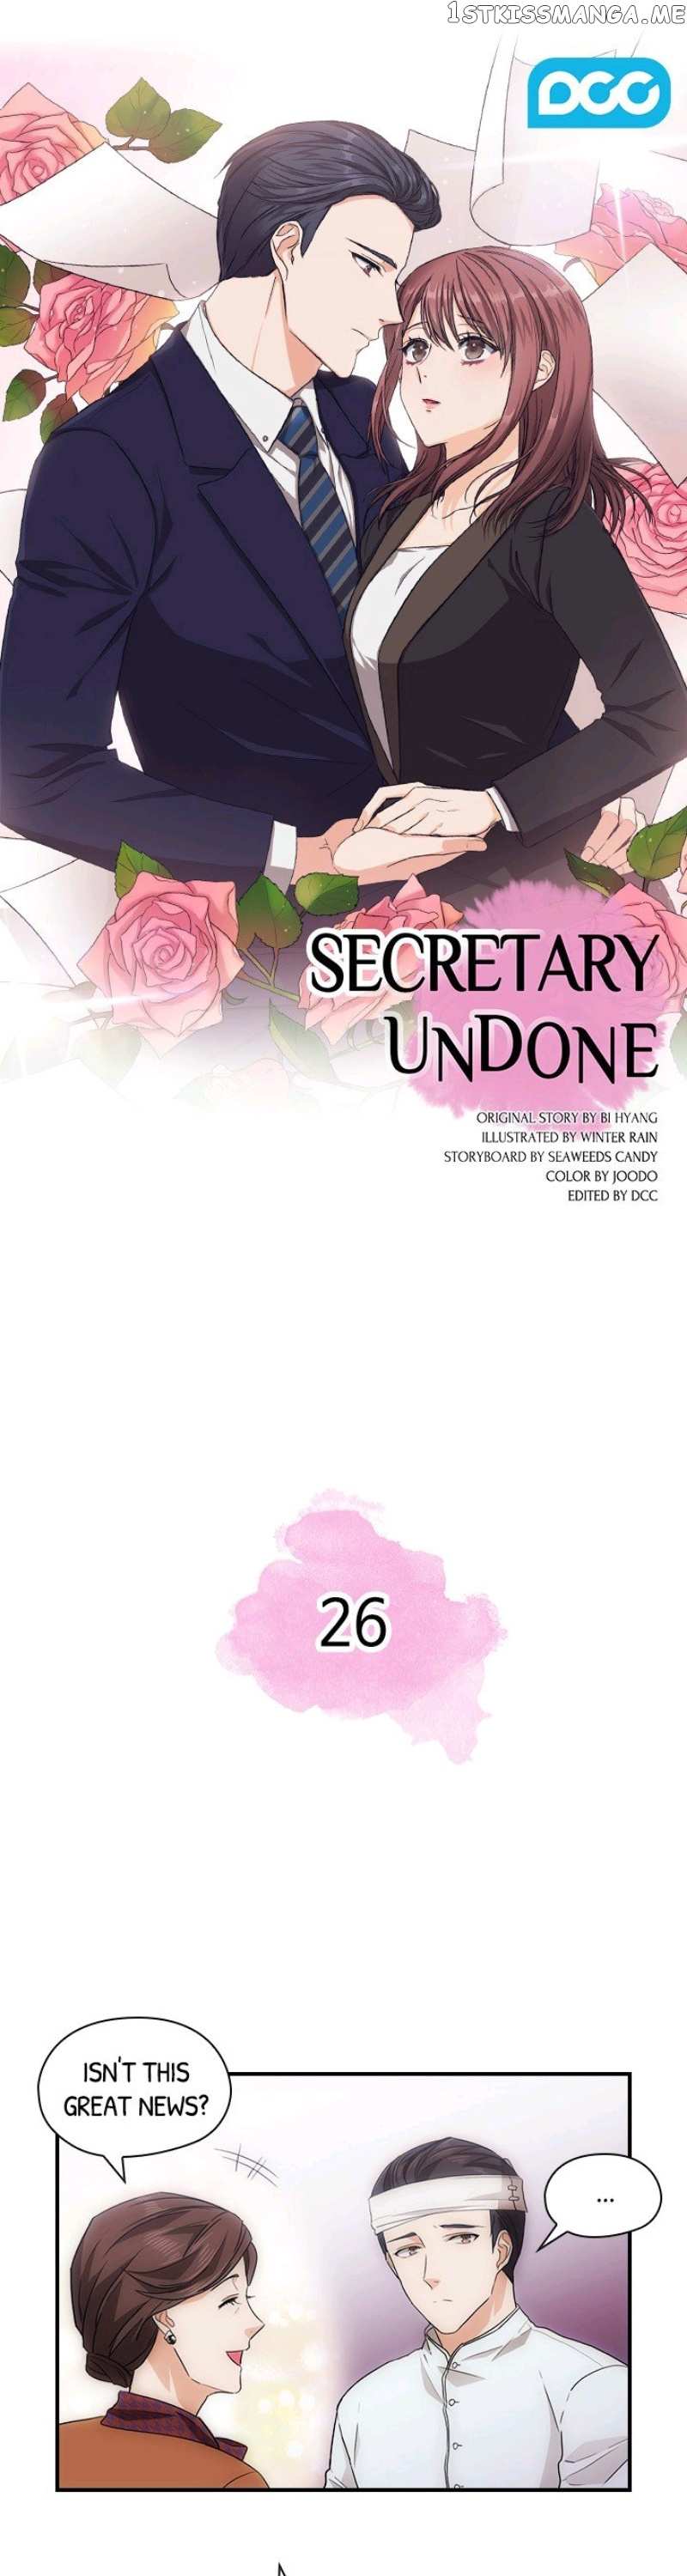 Secretary Undone chapter 26 - page 1